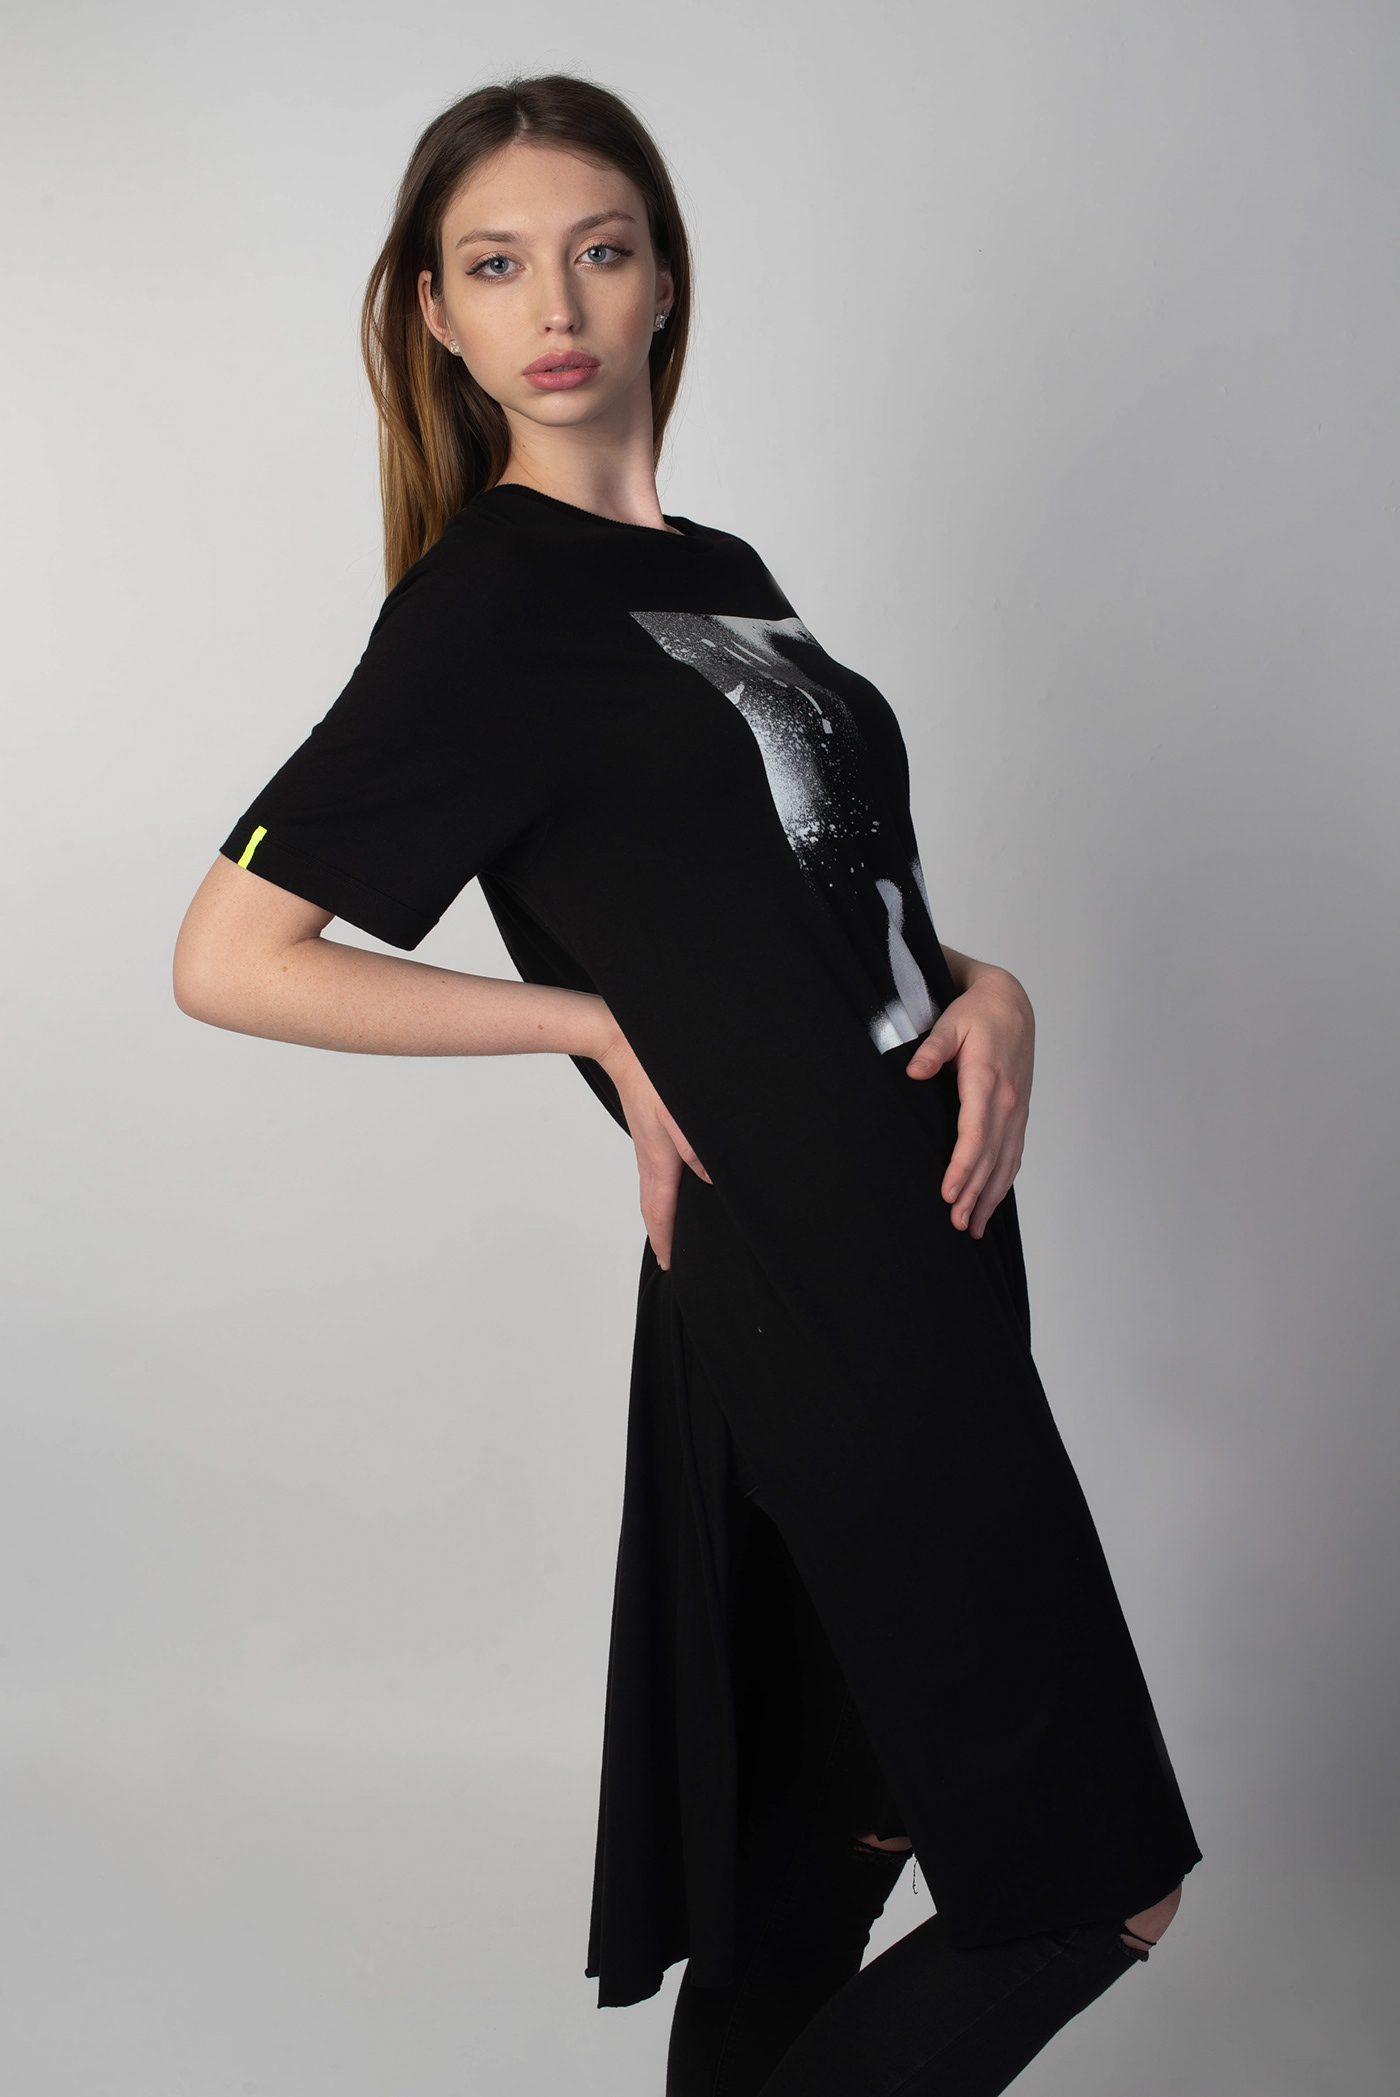 casual futuristic elegant portrait beauty Czech blonde model Model Agency moda